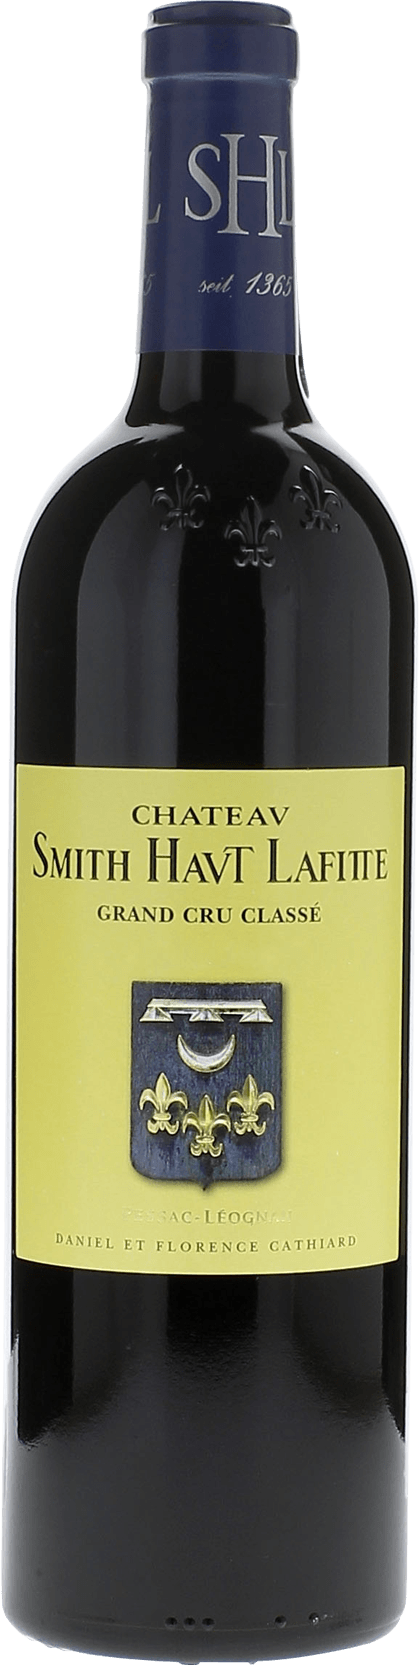 Smith haut lafitte 2010 Grand Cru Class Graves, Bordeaux rouge